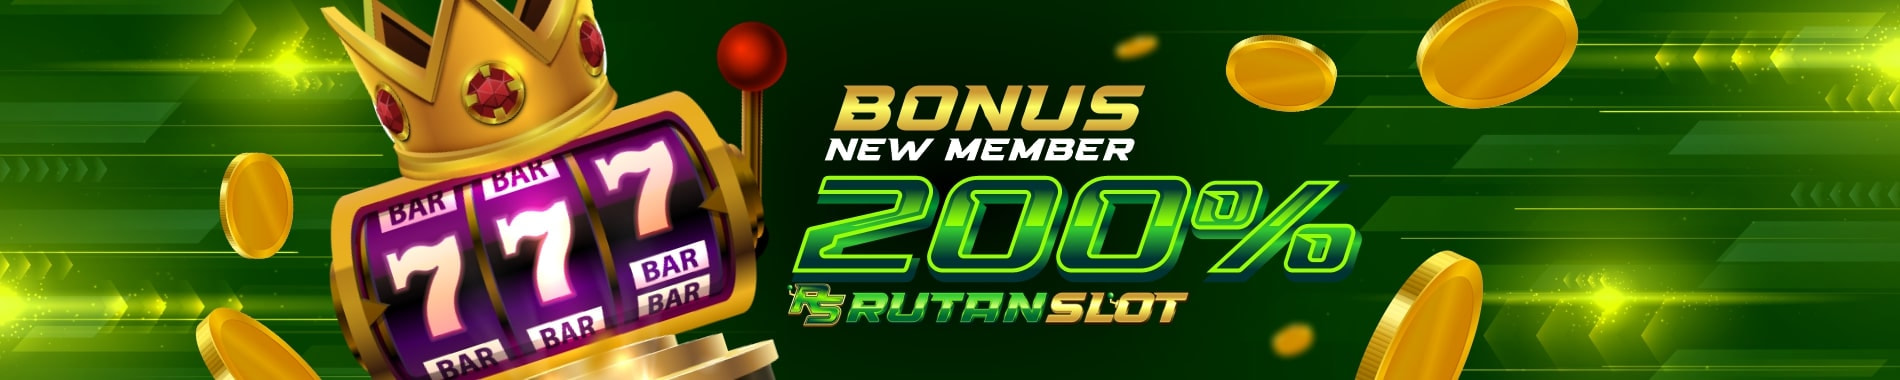 Slot Bonus New Member 200% di Awal